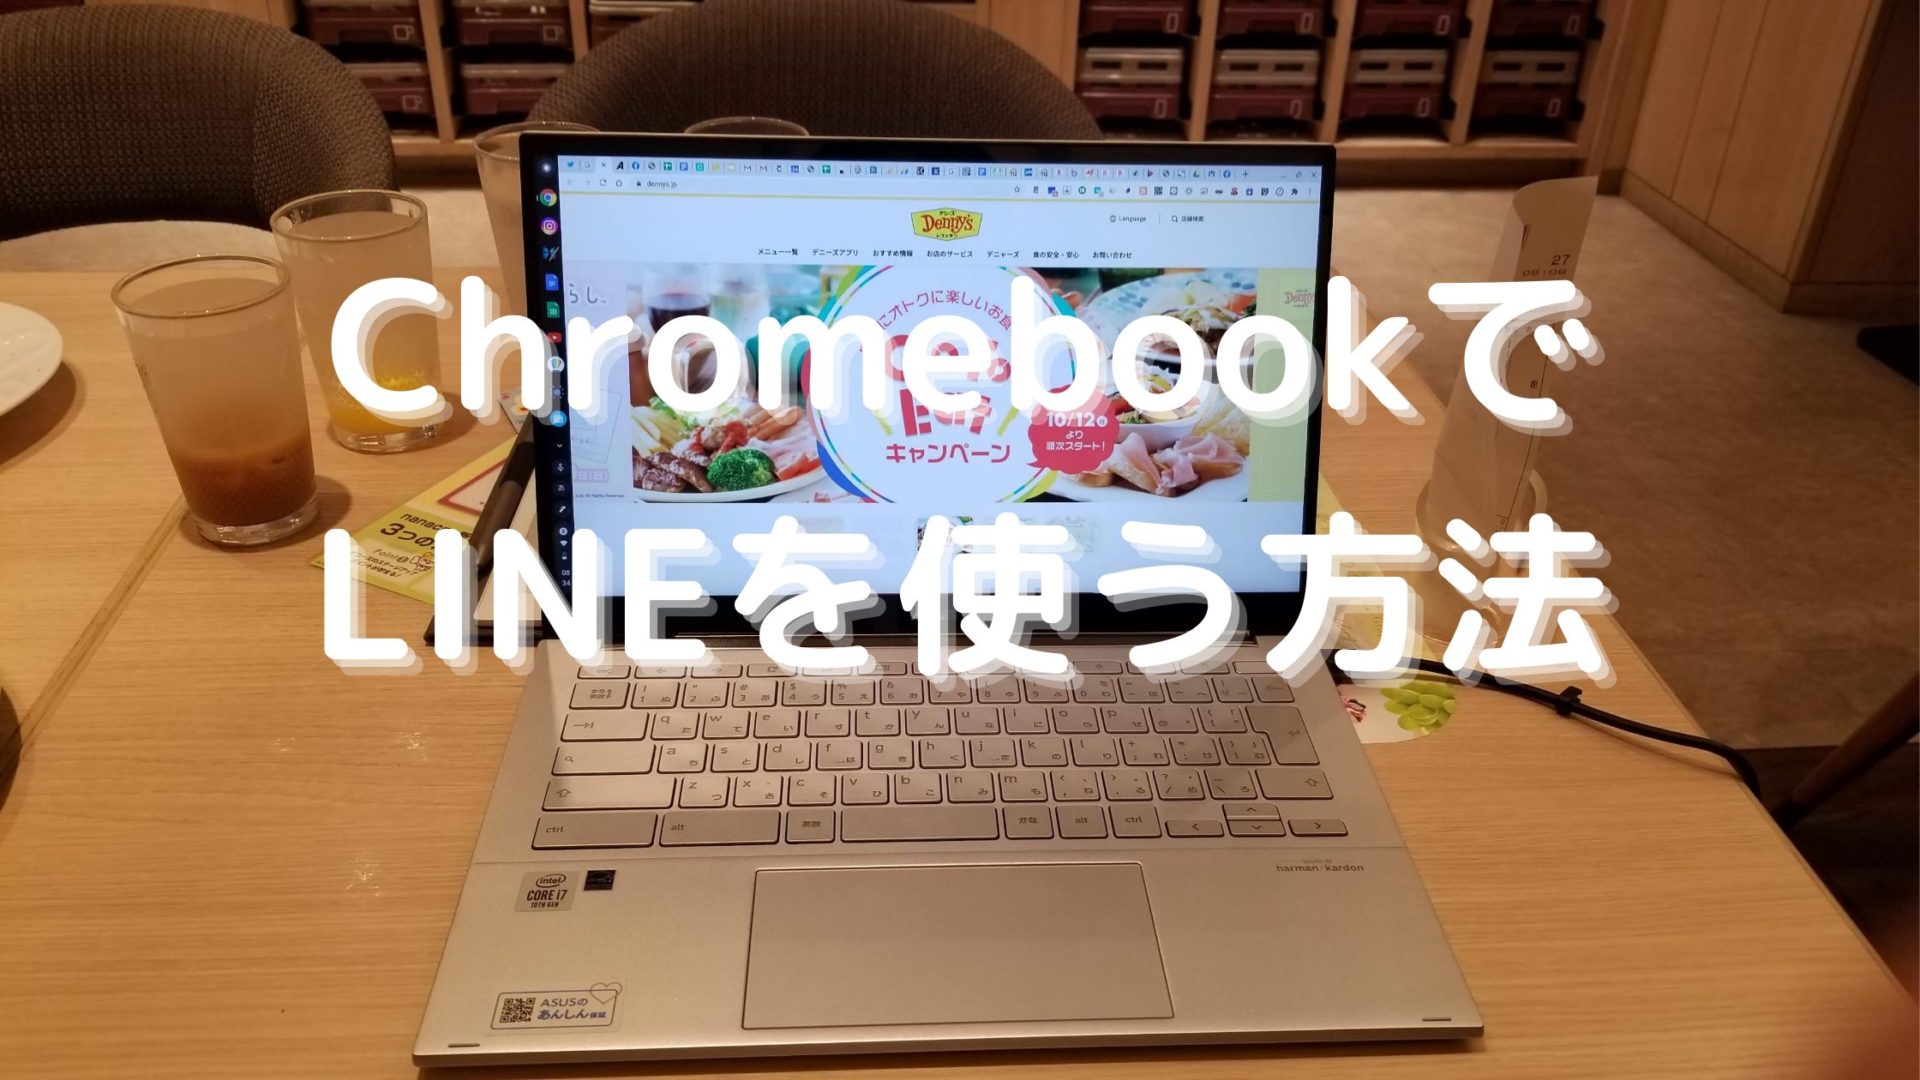 使い方 Chromebook クロームブック でlineを使う方法と注意点 タケマコブログ